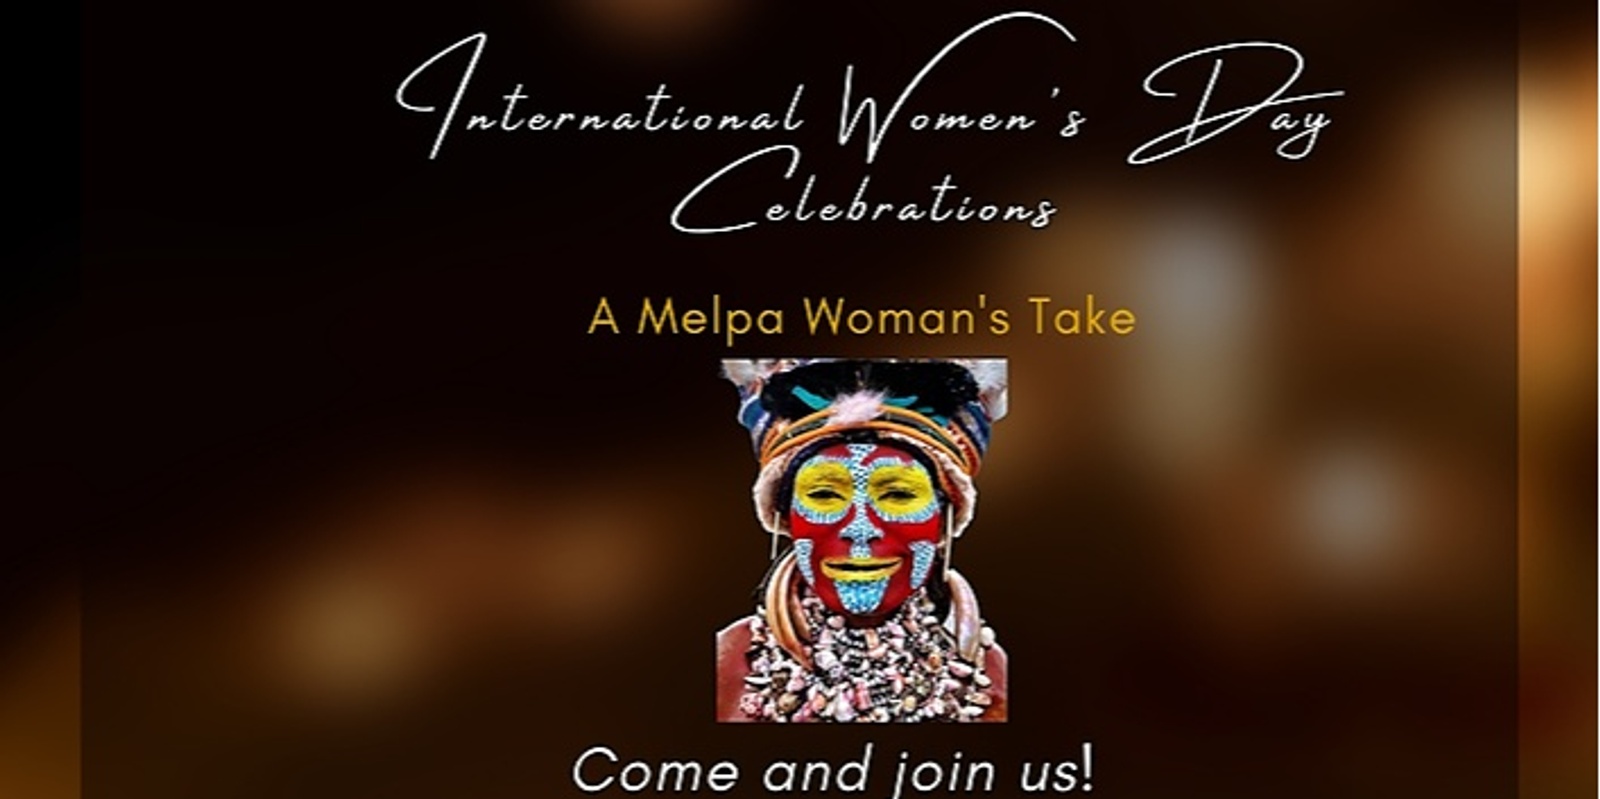 International Women's Day Celebrations - A Melpa Woman's Take